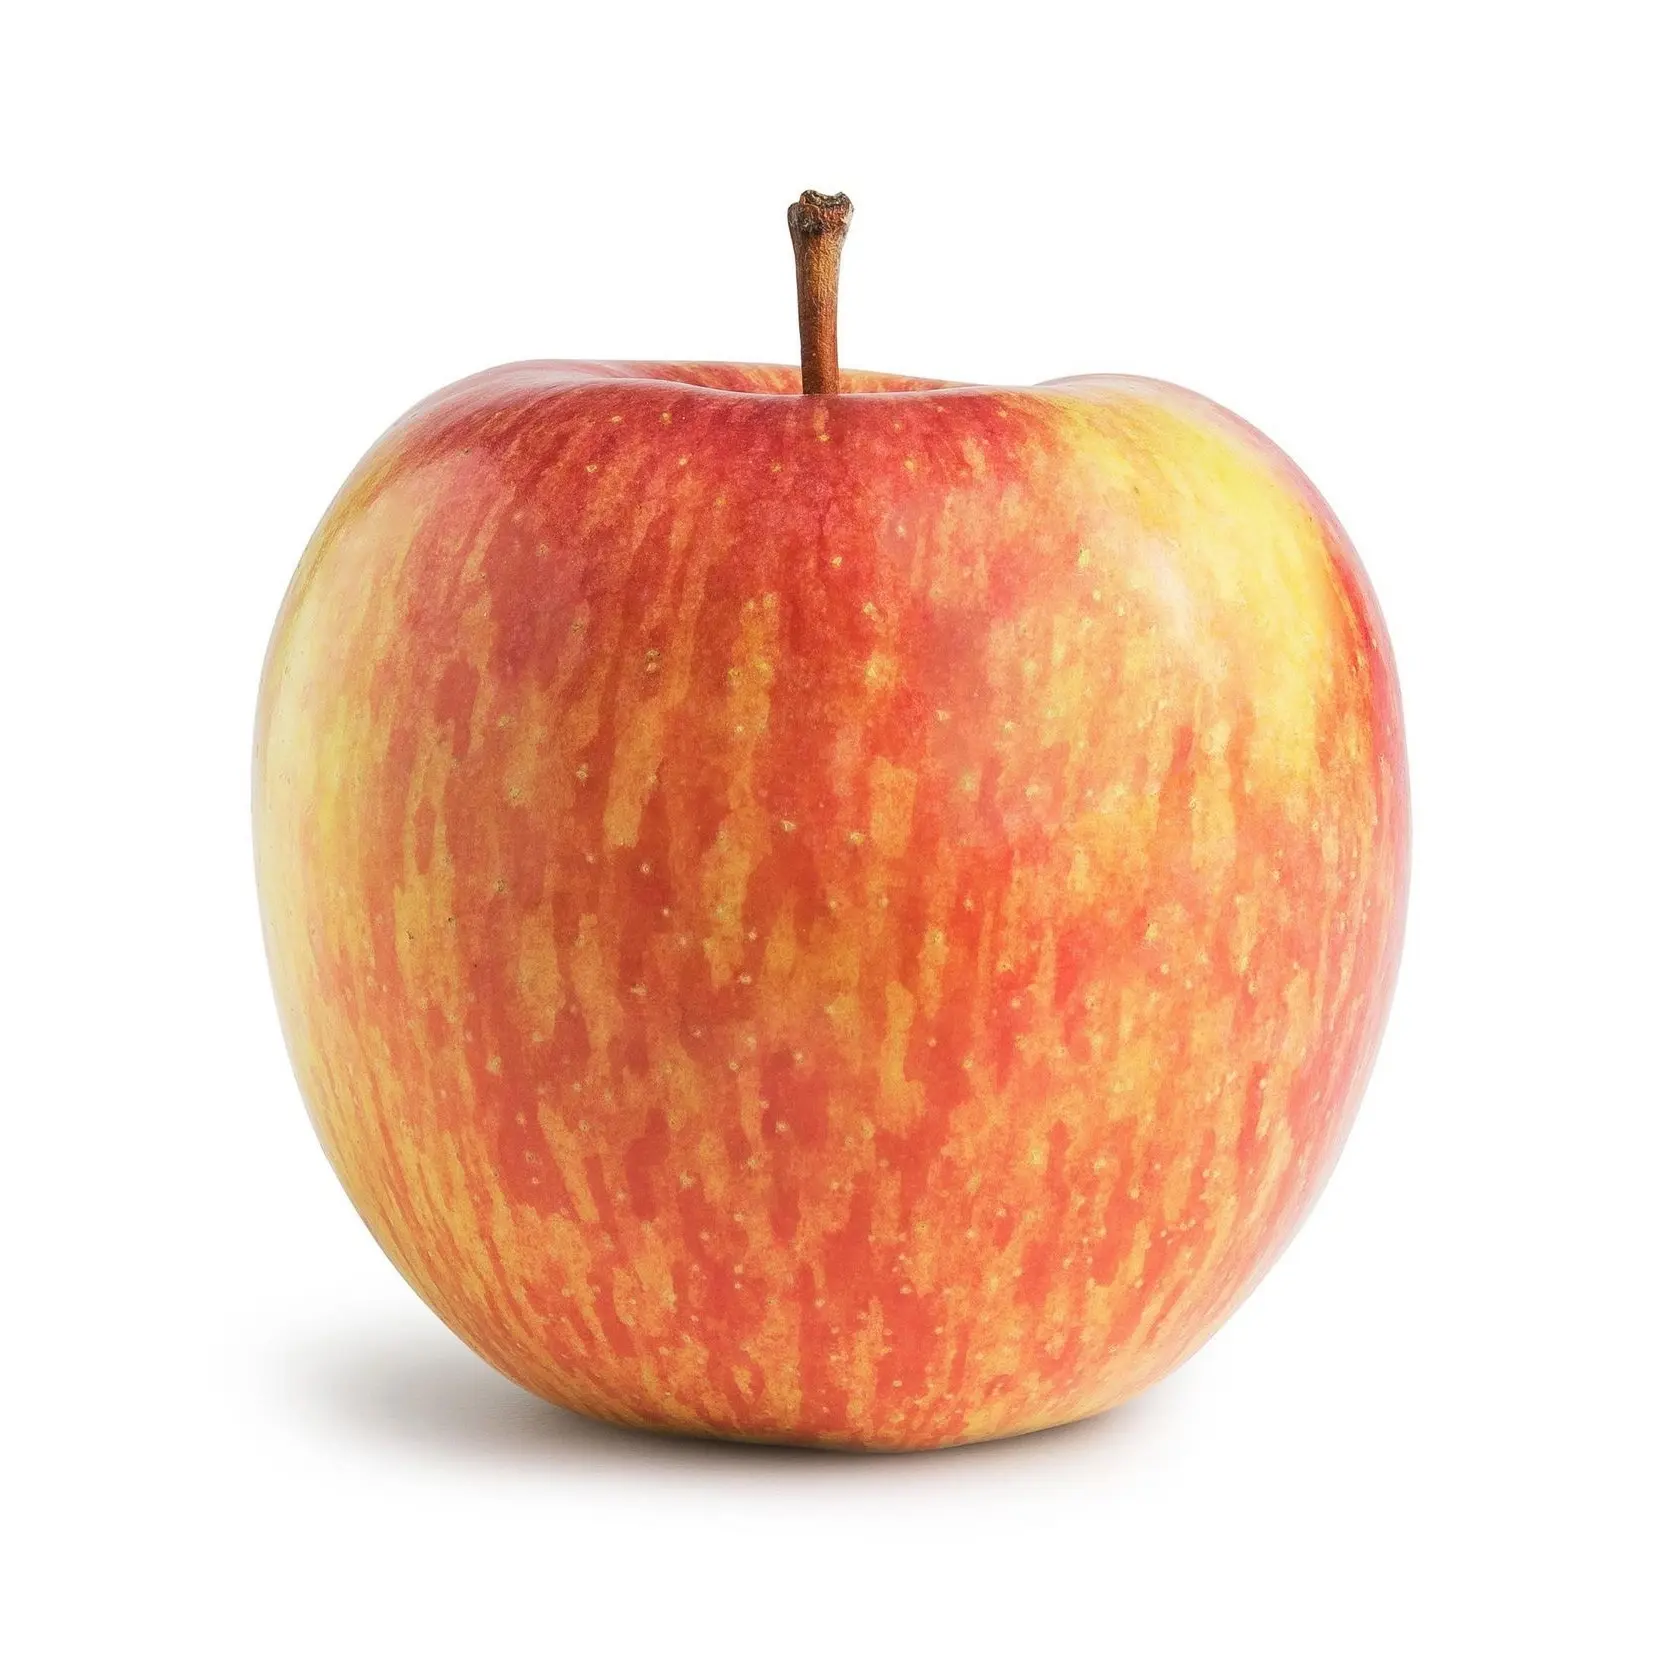 Großhändler und Lieferant von süßen frischen Äpfeln frischen roten Fuji Äpfeln frische Früchte beste Qualität bester Preis Online-Großhandel kaufen